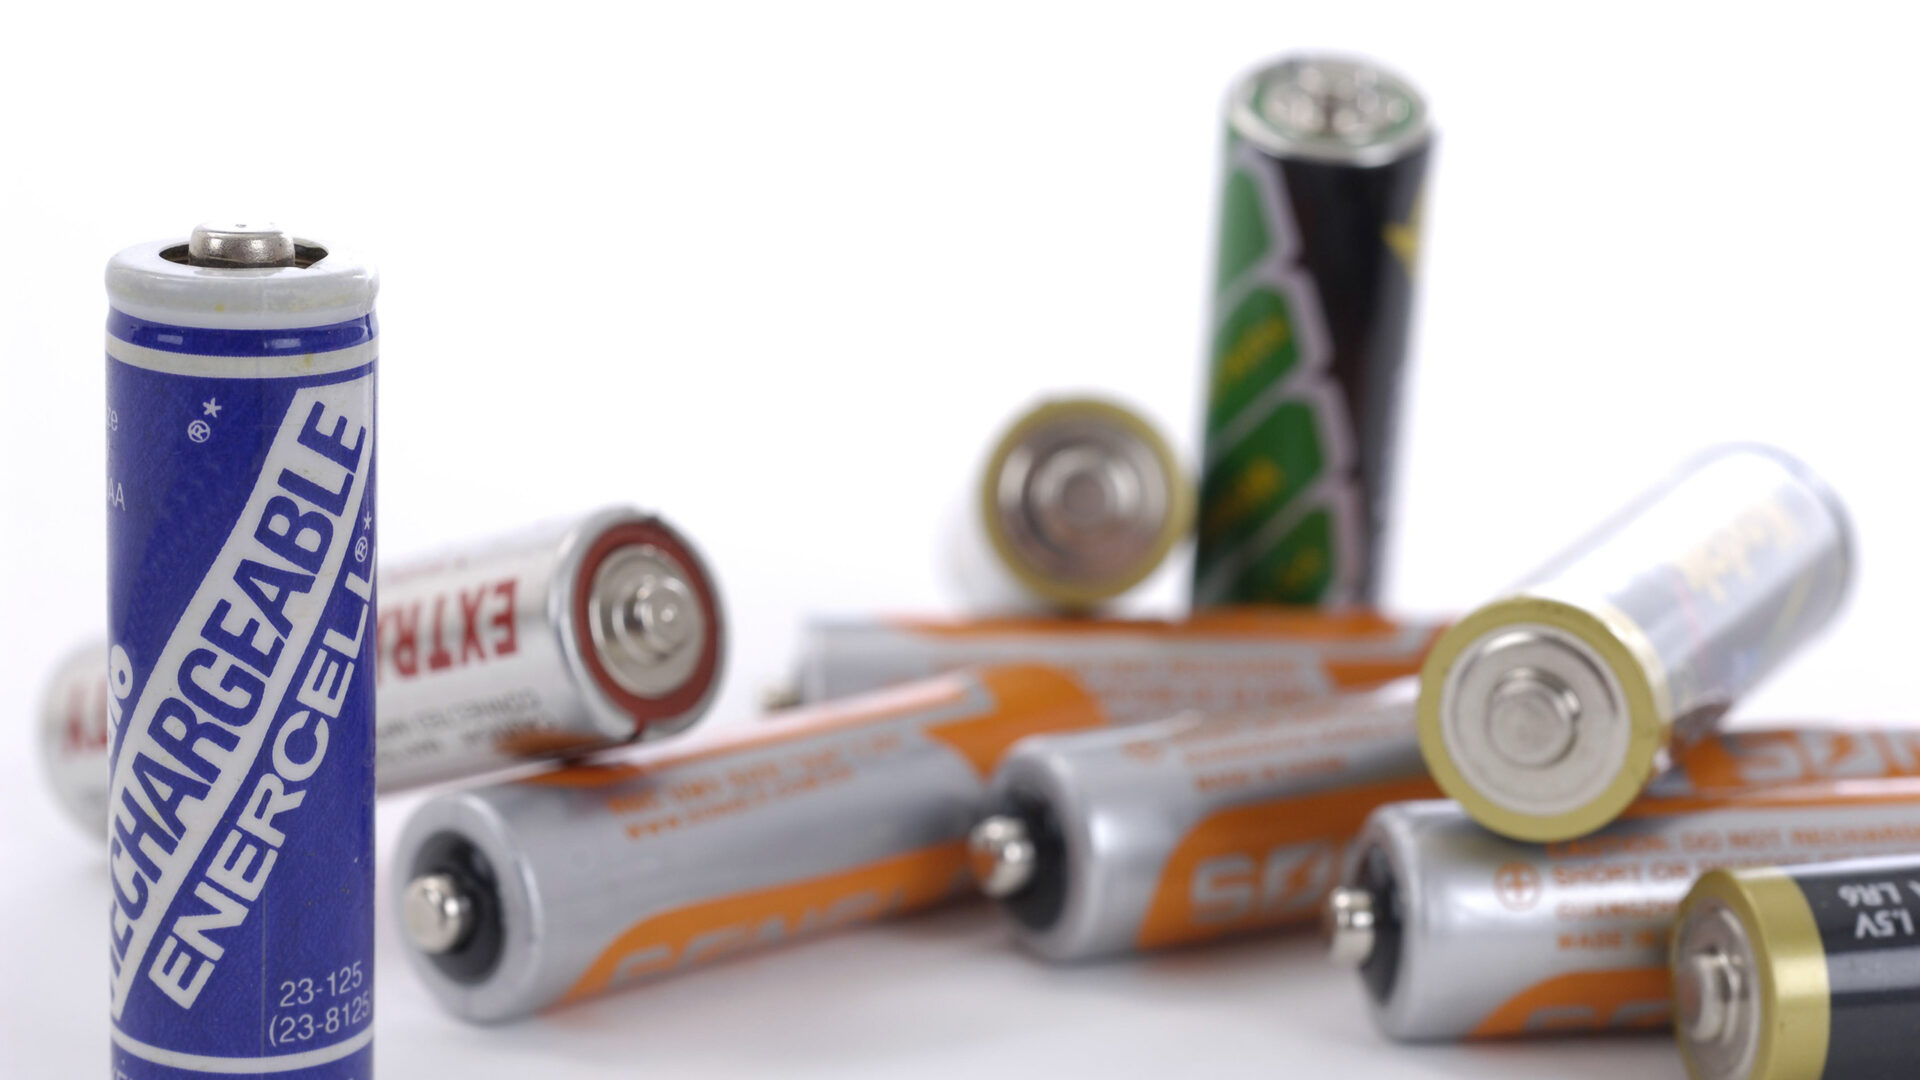 Nyt batteridirektiv vil påvirke produkterne